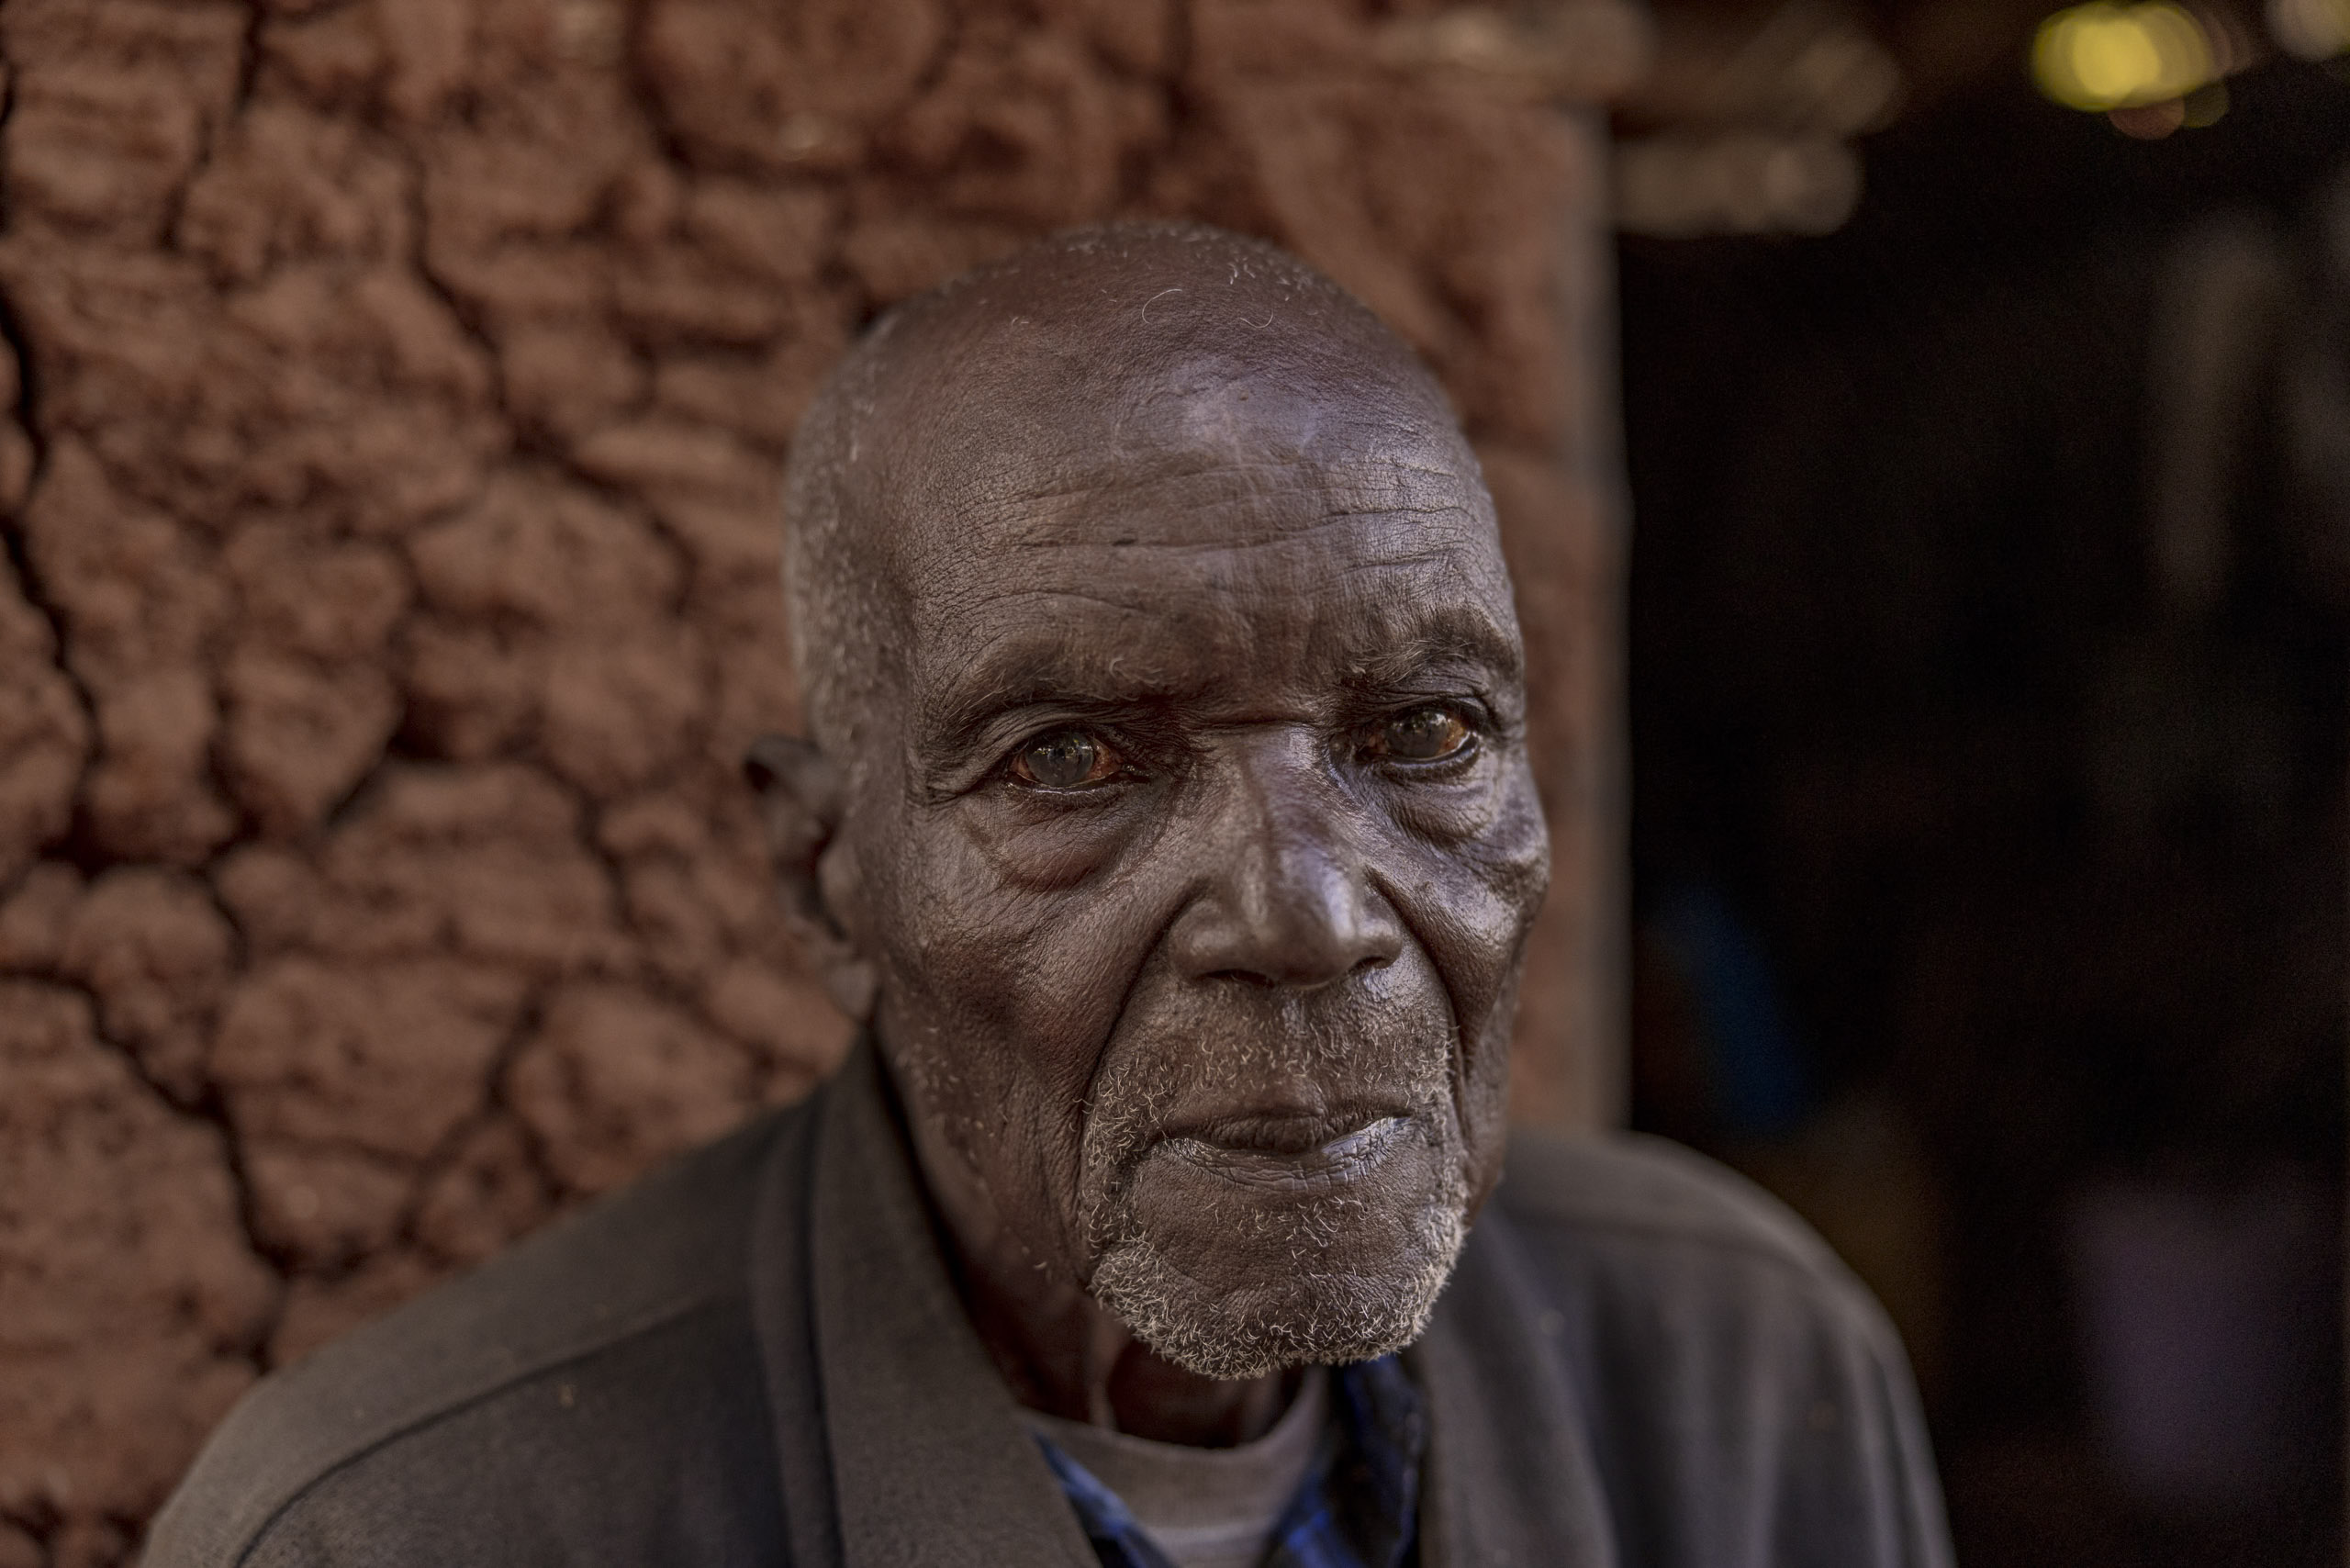 Ein älterer Mann mit tief zerfurchtem Gesicht und nachdenklichen Augen blickt direkt in die Kamera und posiert vor dem unscharfen Hintergrund einer Lehmmauer. Er trägt eine graue Jacke über einem blauen Hemd. © Fotografie Tomas Rodriguez